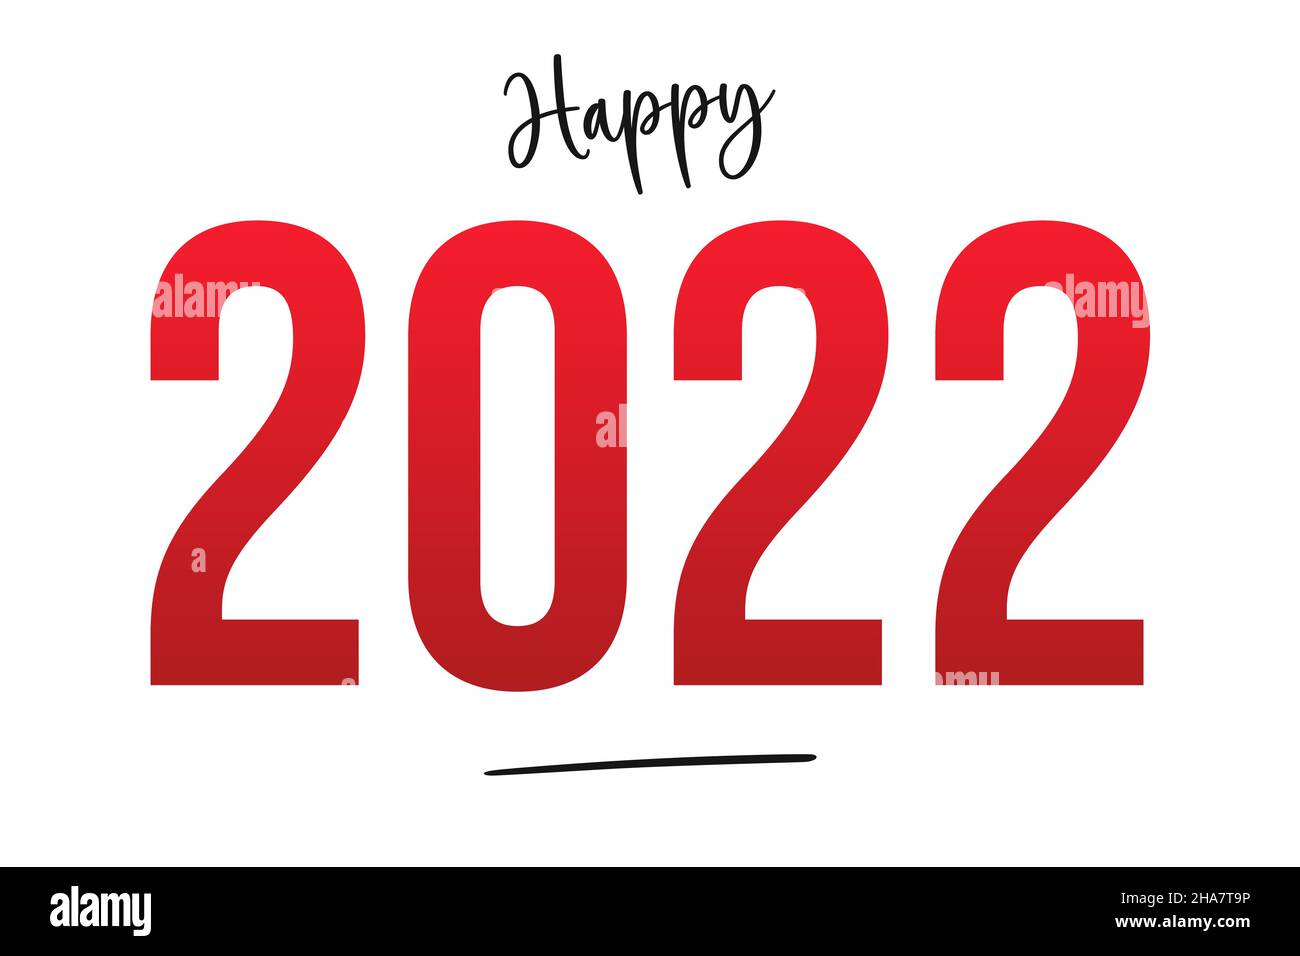 Feliz año nuevo 2022. Celebrar y desear un Feliz año nuevo. Resoluciones de año nuevo, motivación positiva, tarjeta START 2022, banner, fondo blanco Foto de stock